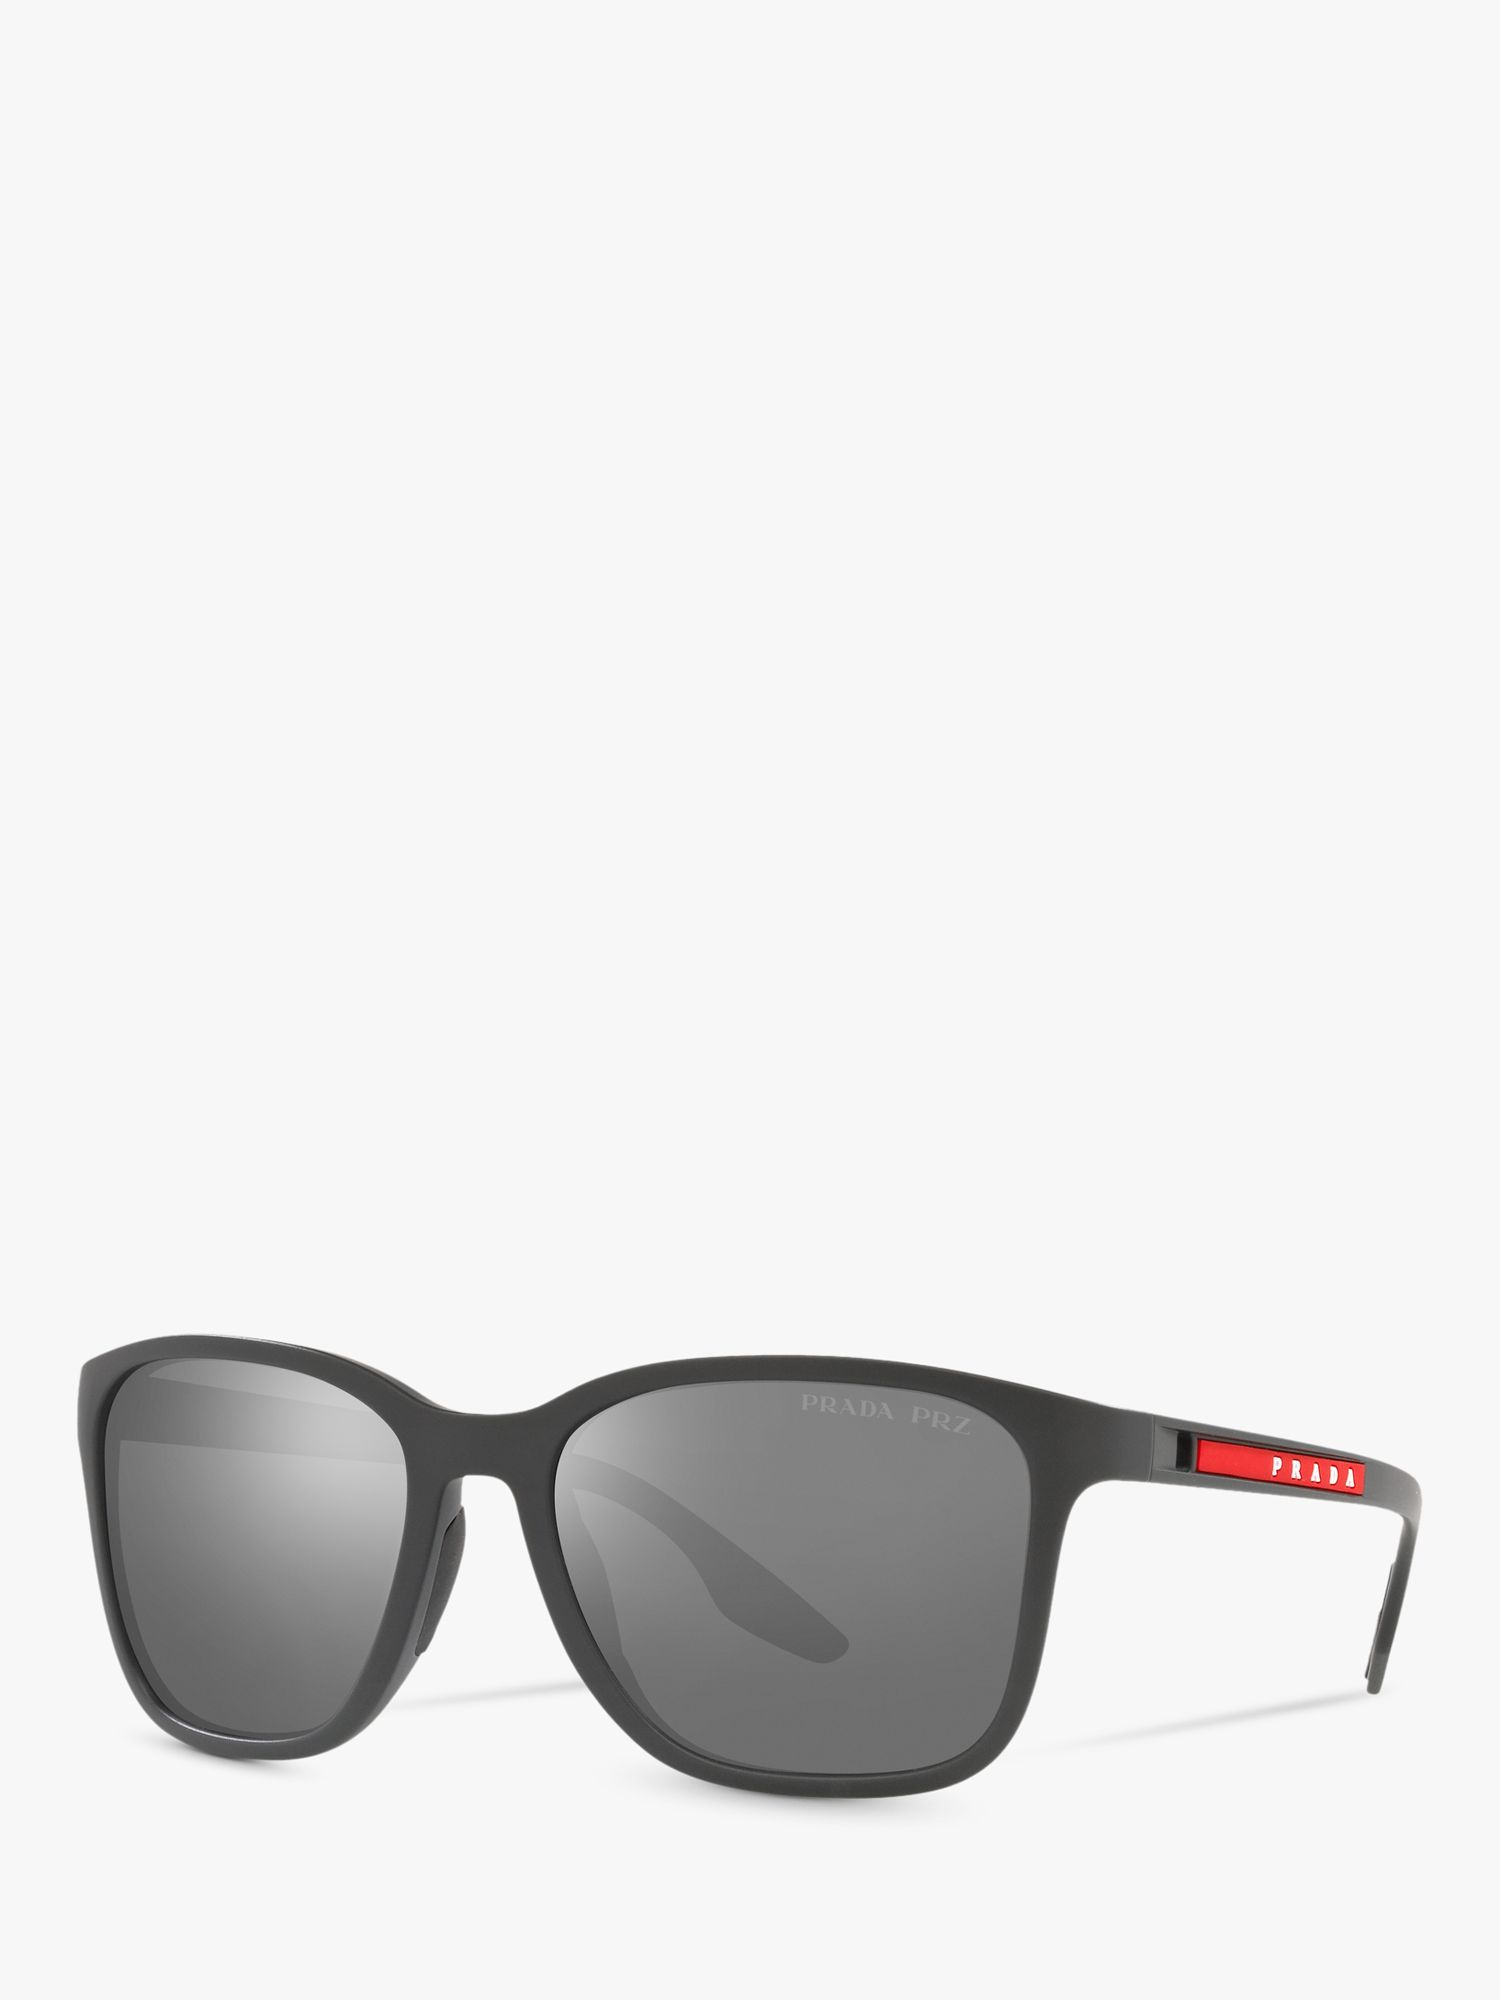 Prada Linea Rossa PS 02WS Men's Pillow Polarised Sunglasses, Grey